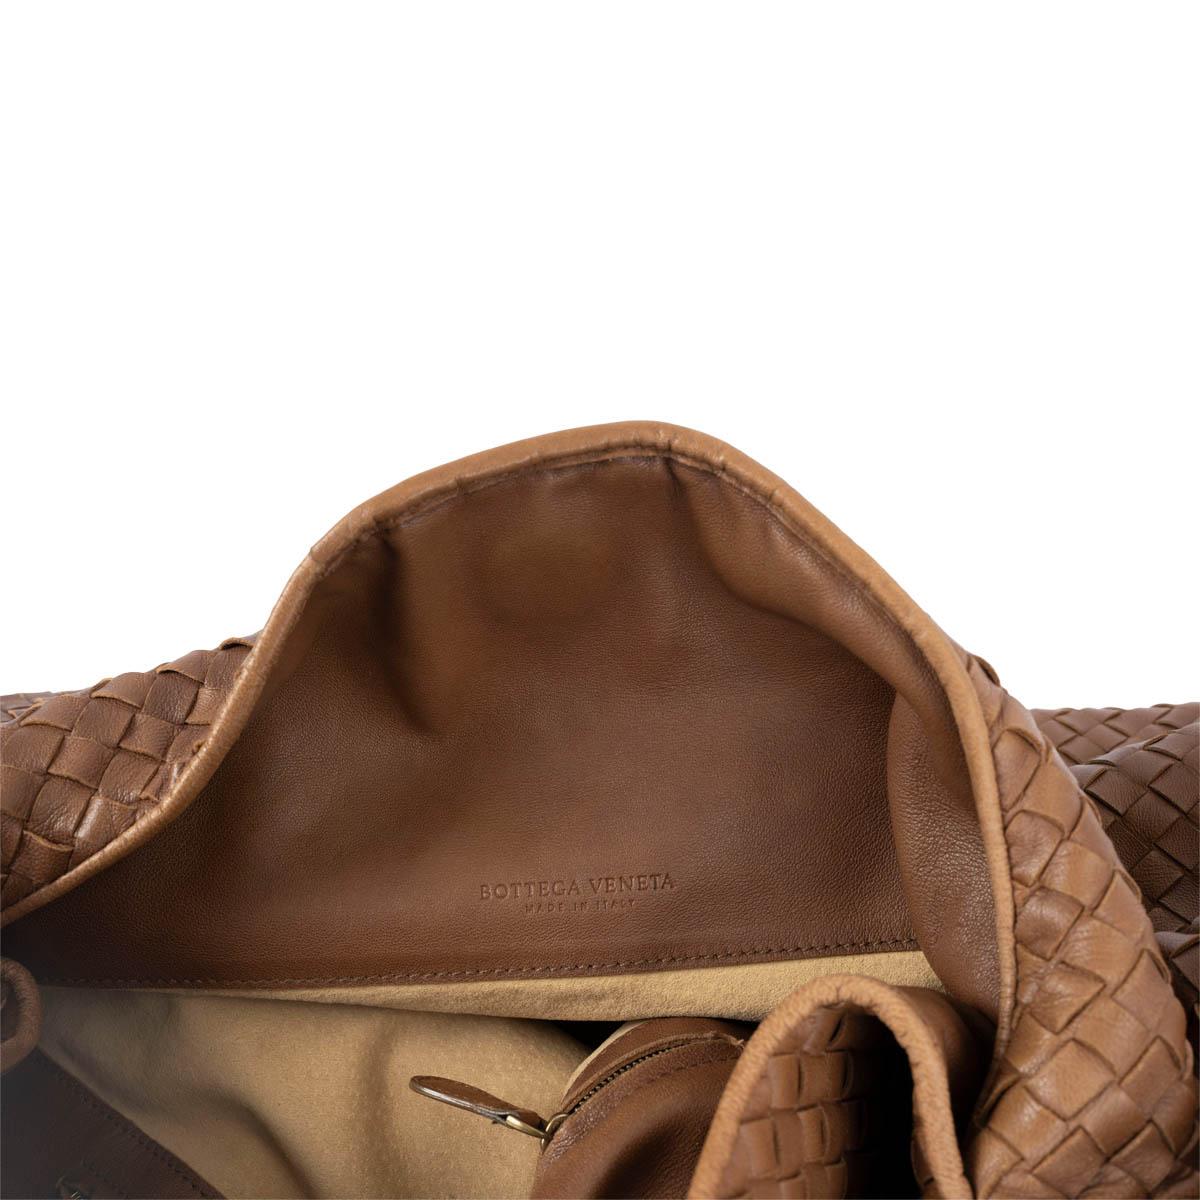 BOTTEGA VENETA tan brown leather SOLANE INTRECCIATO Hobo Bag 1